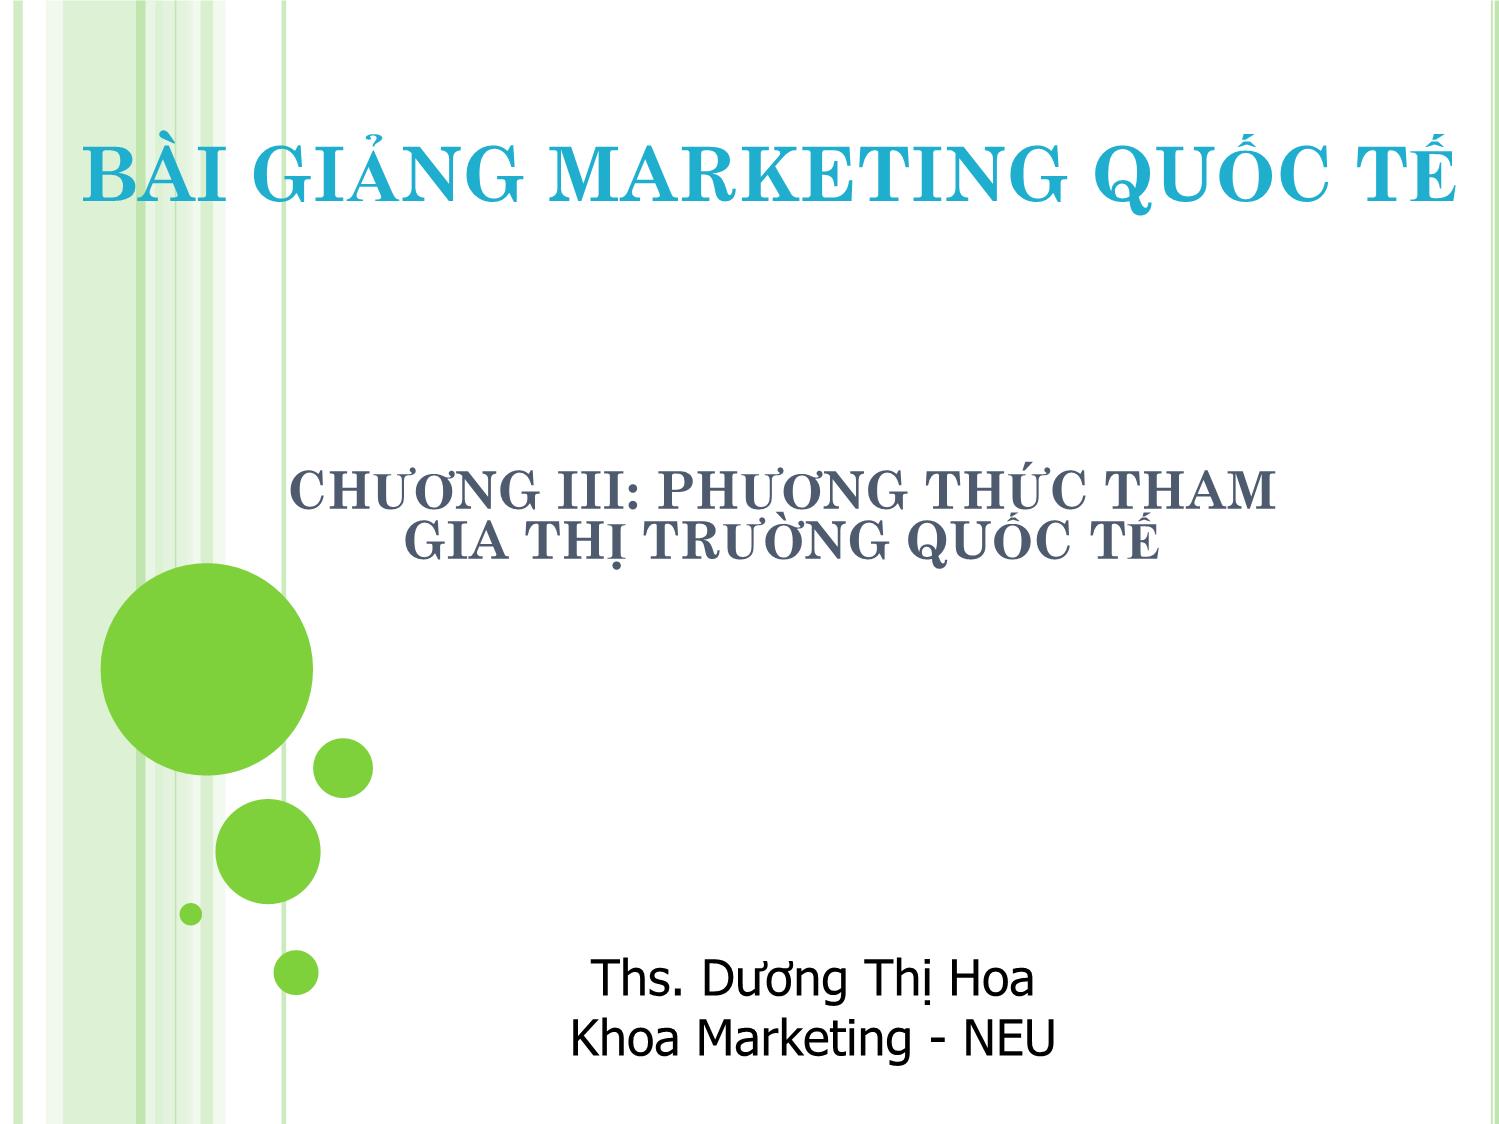 Bài giảng Marketing quốc tế - Chương III: Phương thức tham gia thị trường quốc tế - Dương Thị Hoa trang 1